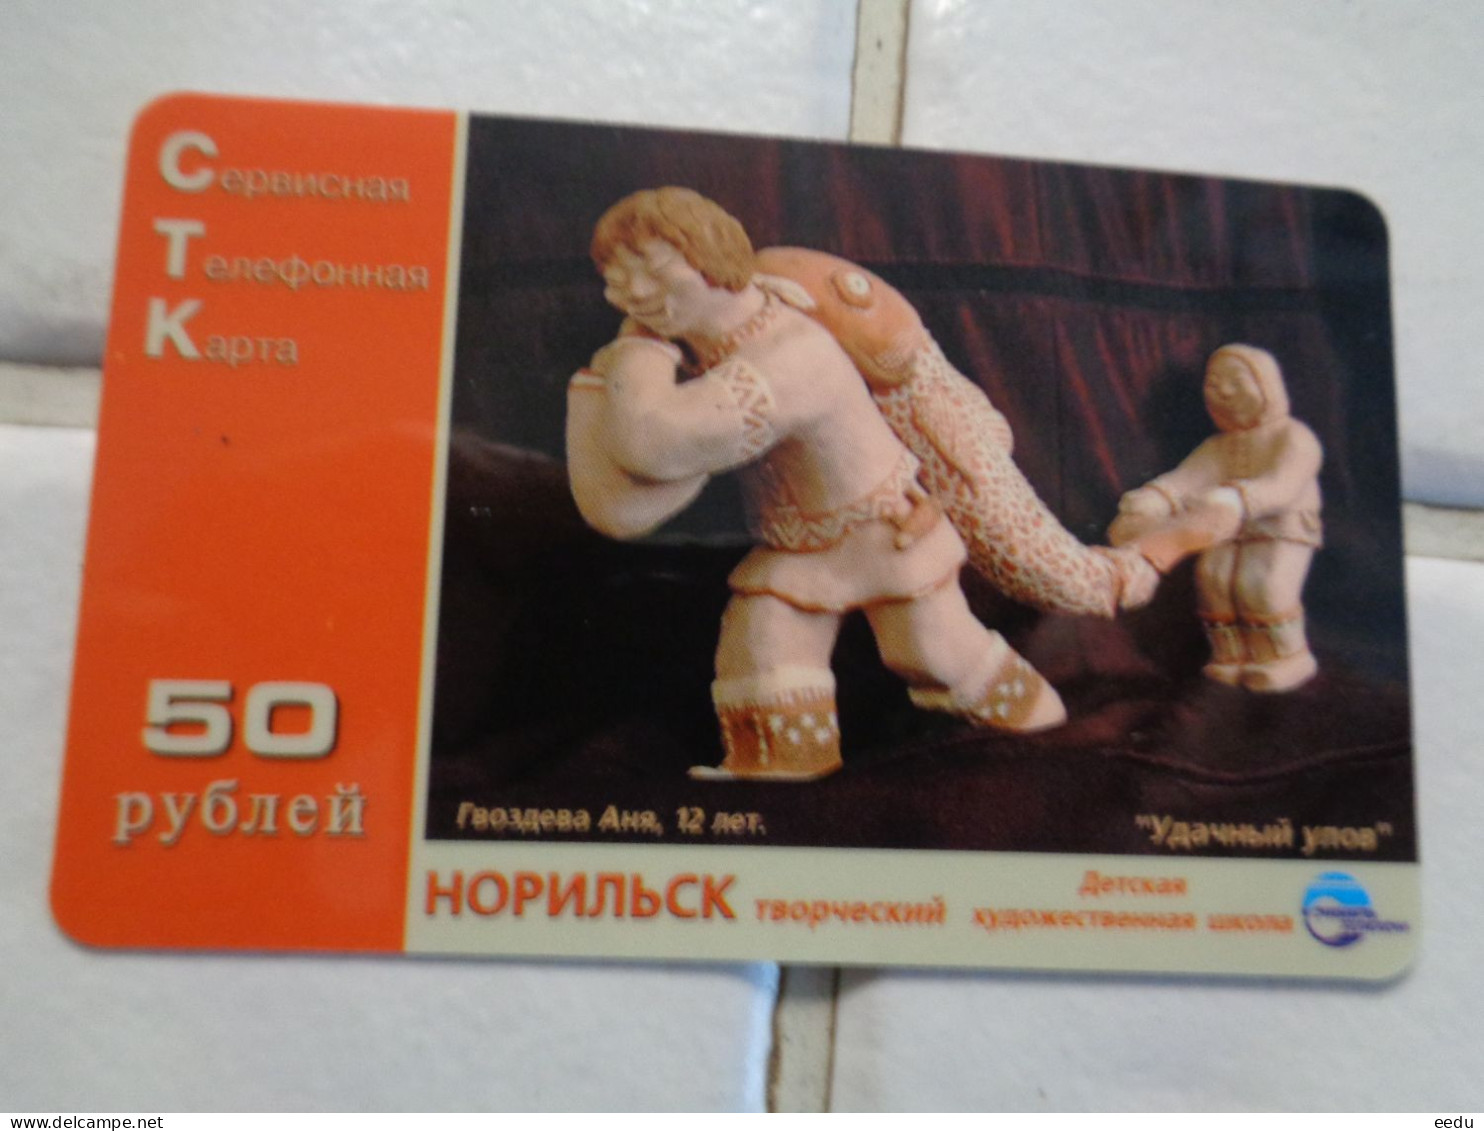 Russia Phonecard - Russia